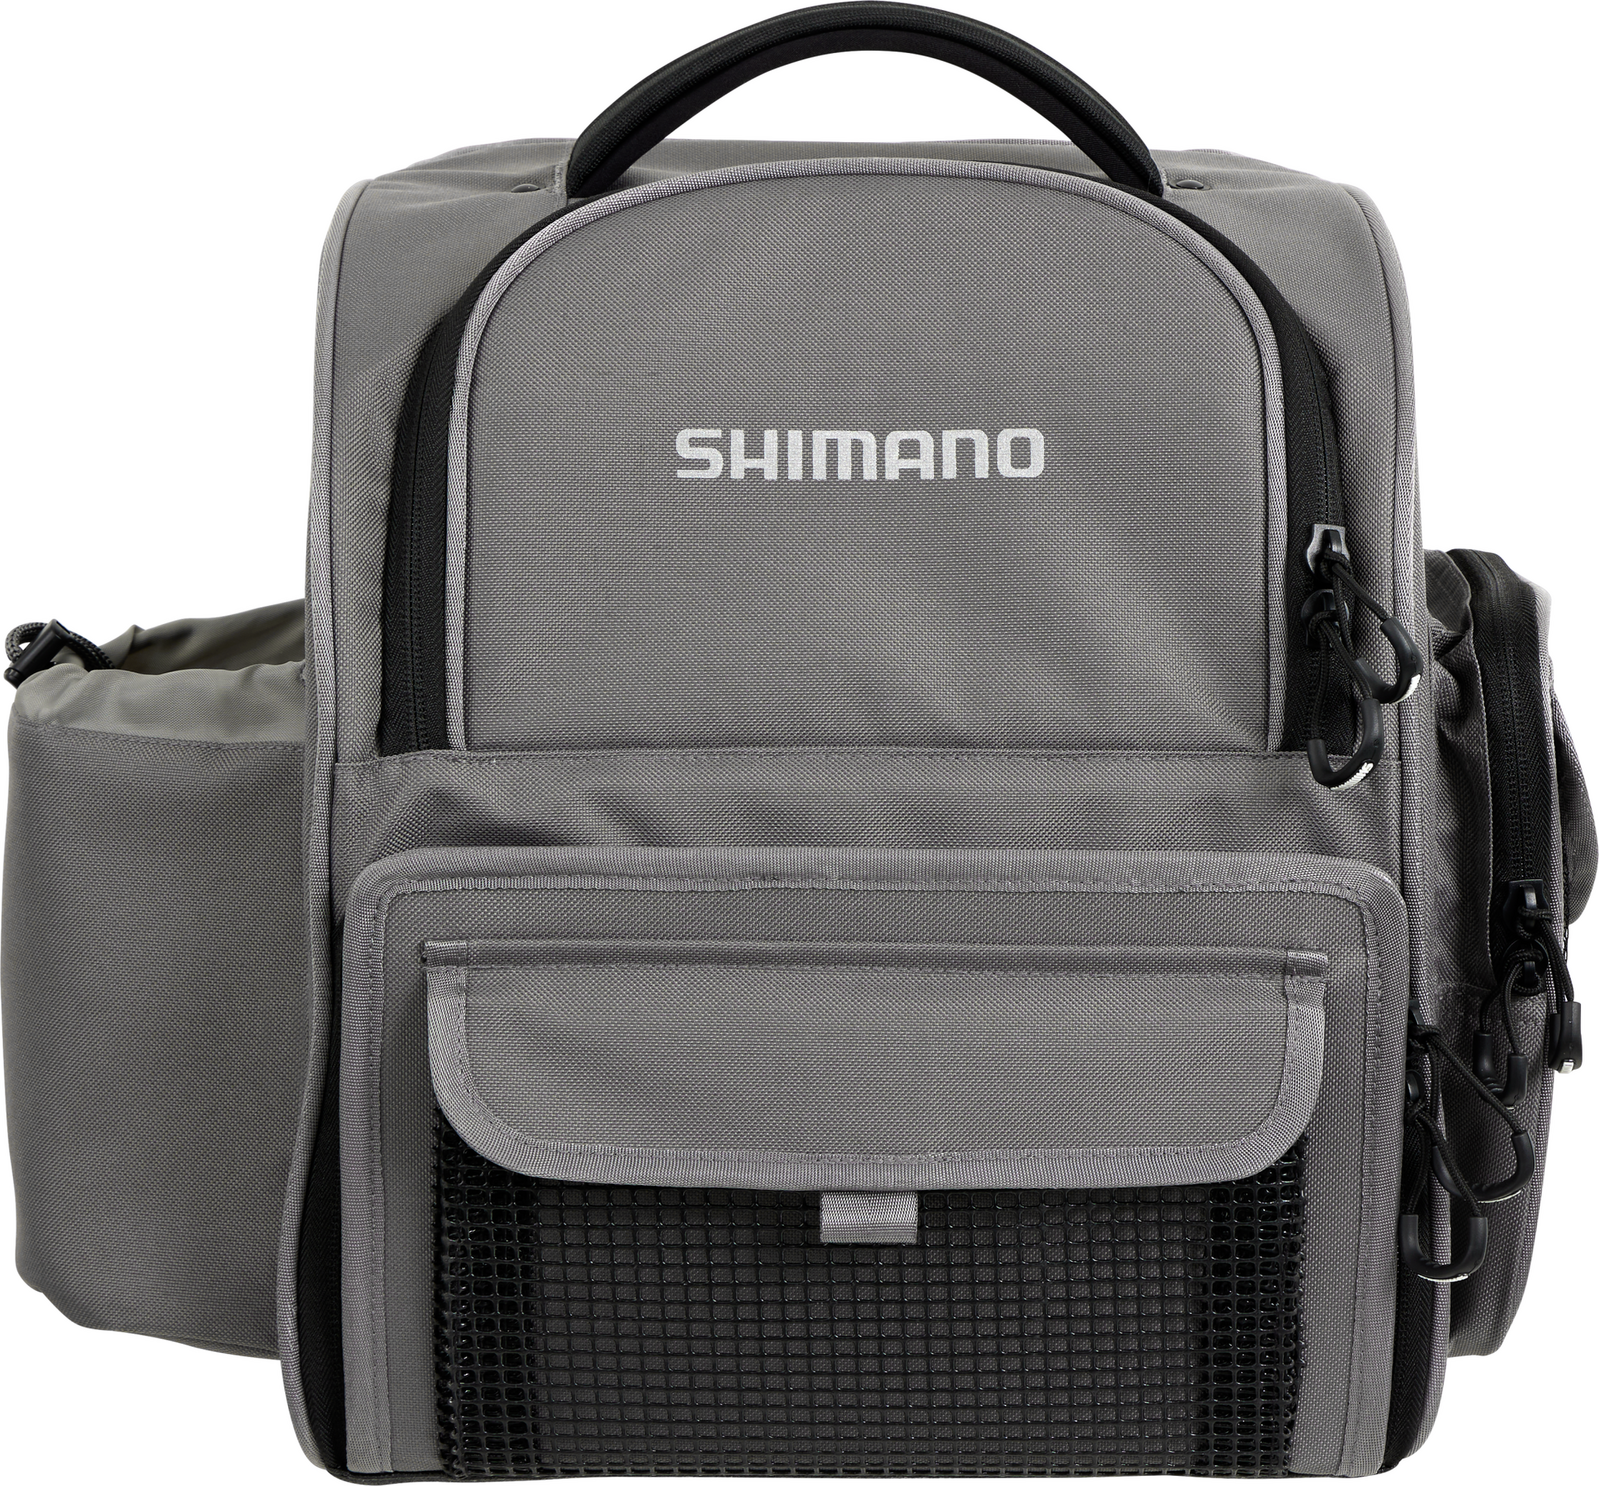 SHIMANO MEDIUM BACK PACK & TACKLE BOX LUGC-14 - Shimano